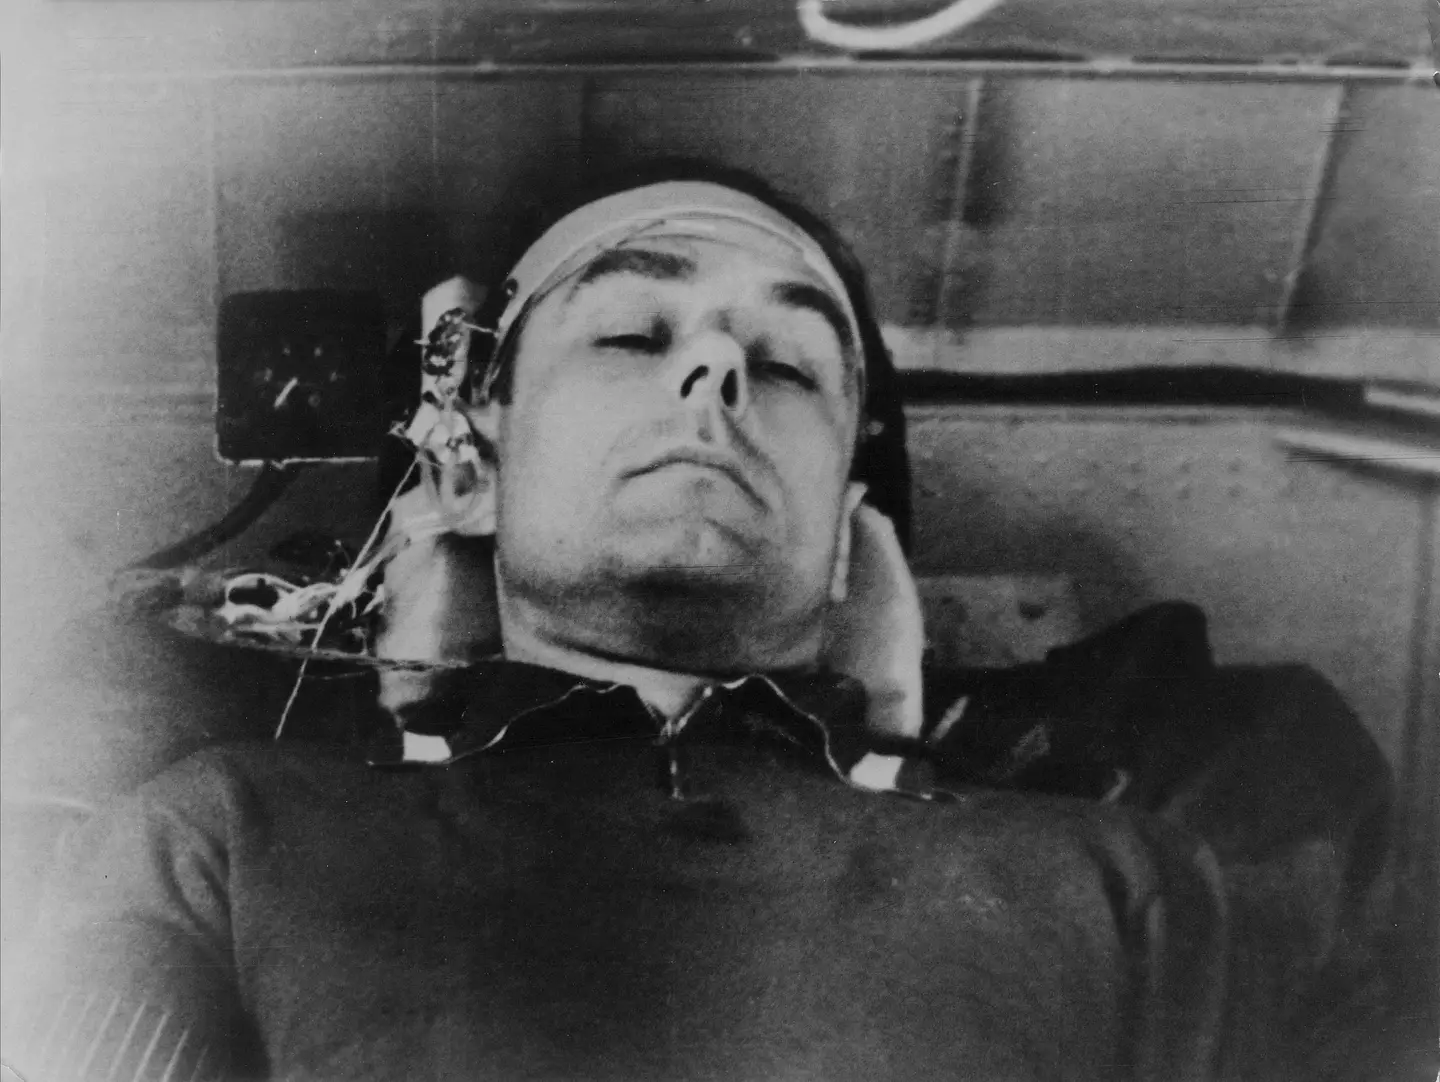 Vladimir Komarov died when his spacecraft crashed.